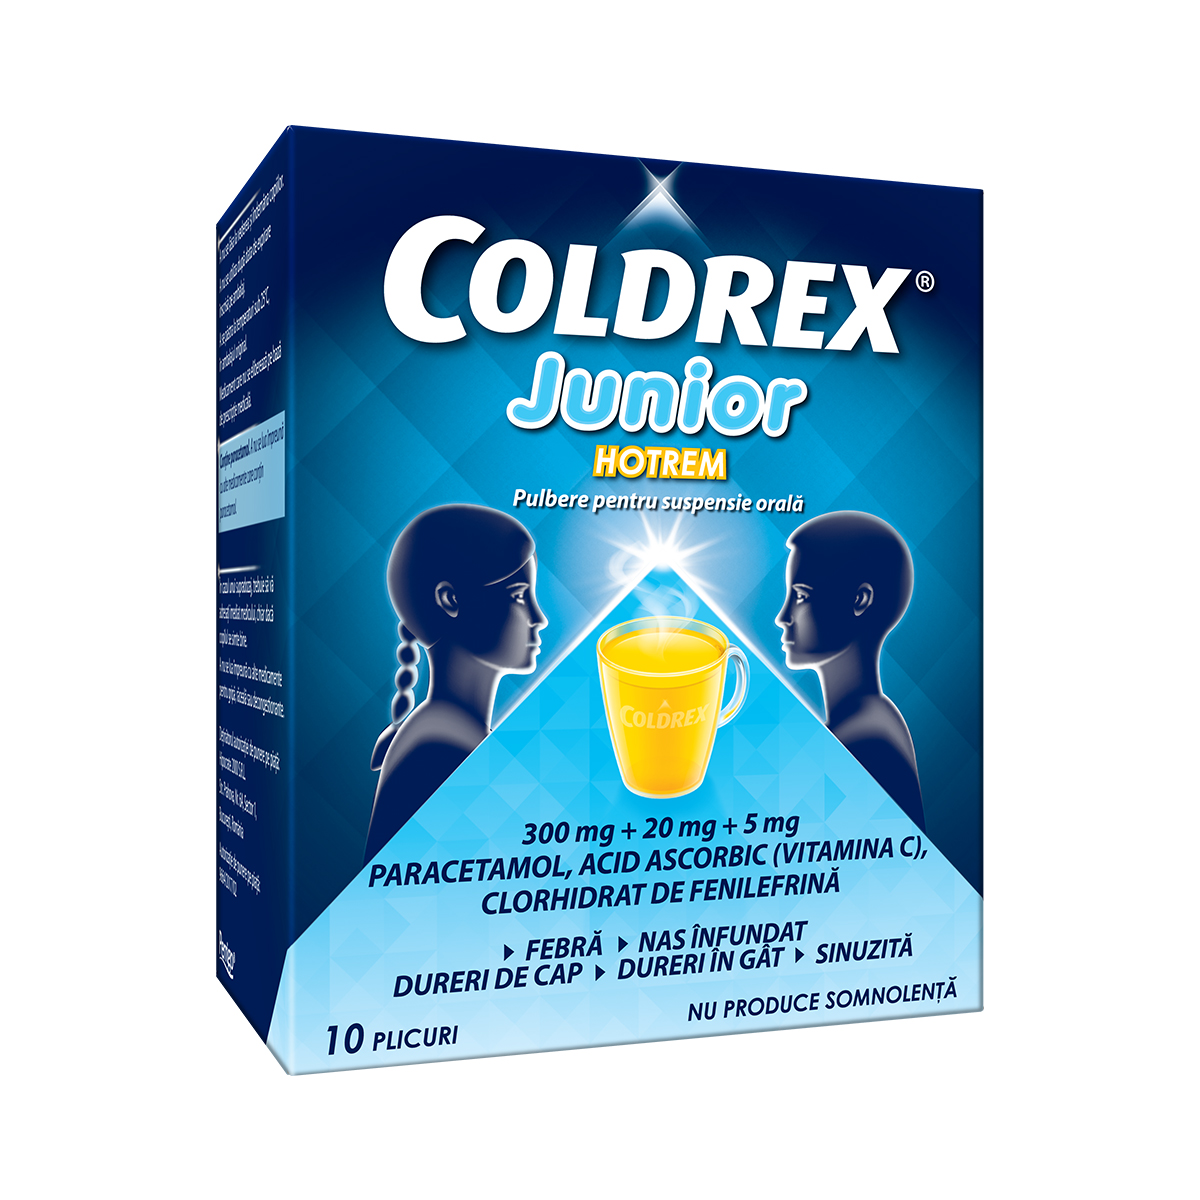 OTC (medicamente care se eliberează fără prescripție medicală) - Coldrex Junior Hotrem 3g x 10pl, epastila.ro